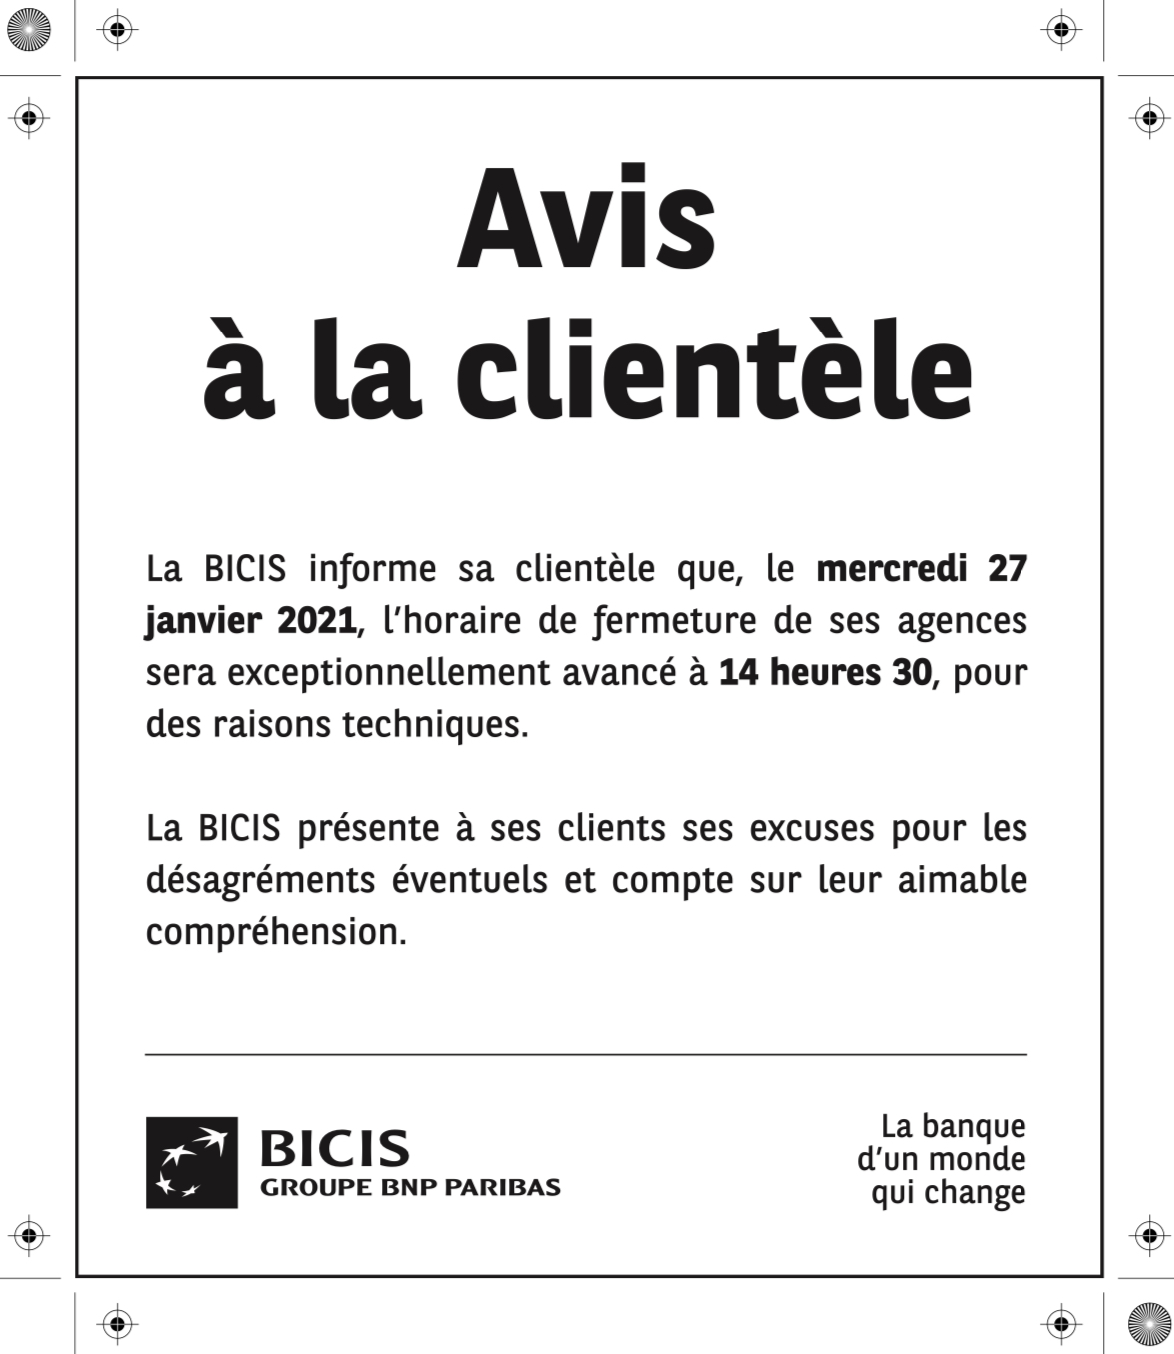 La Bicis avance exceptionnellement l’horaire de fermeture de ses agences à 14H30 le mercredi 27 janvier